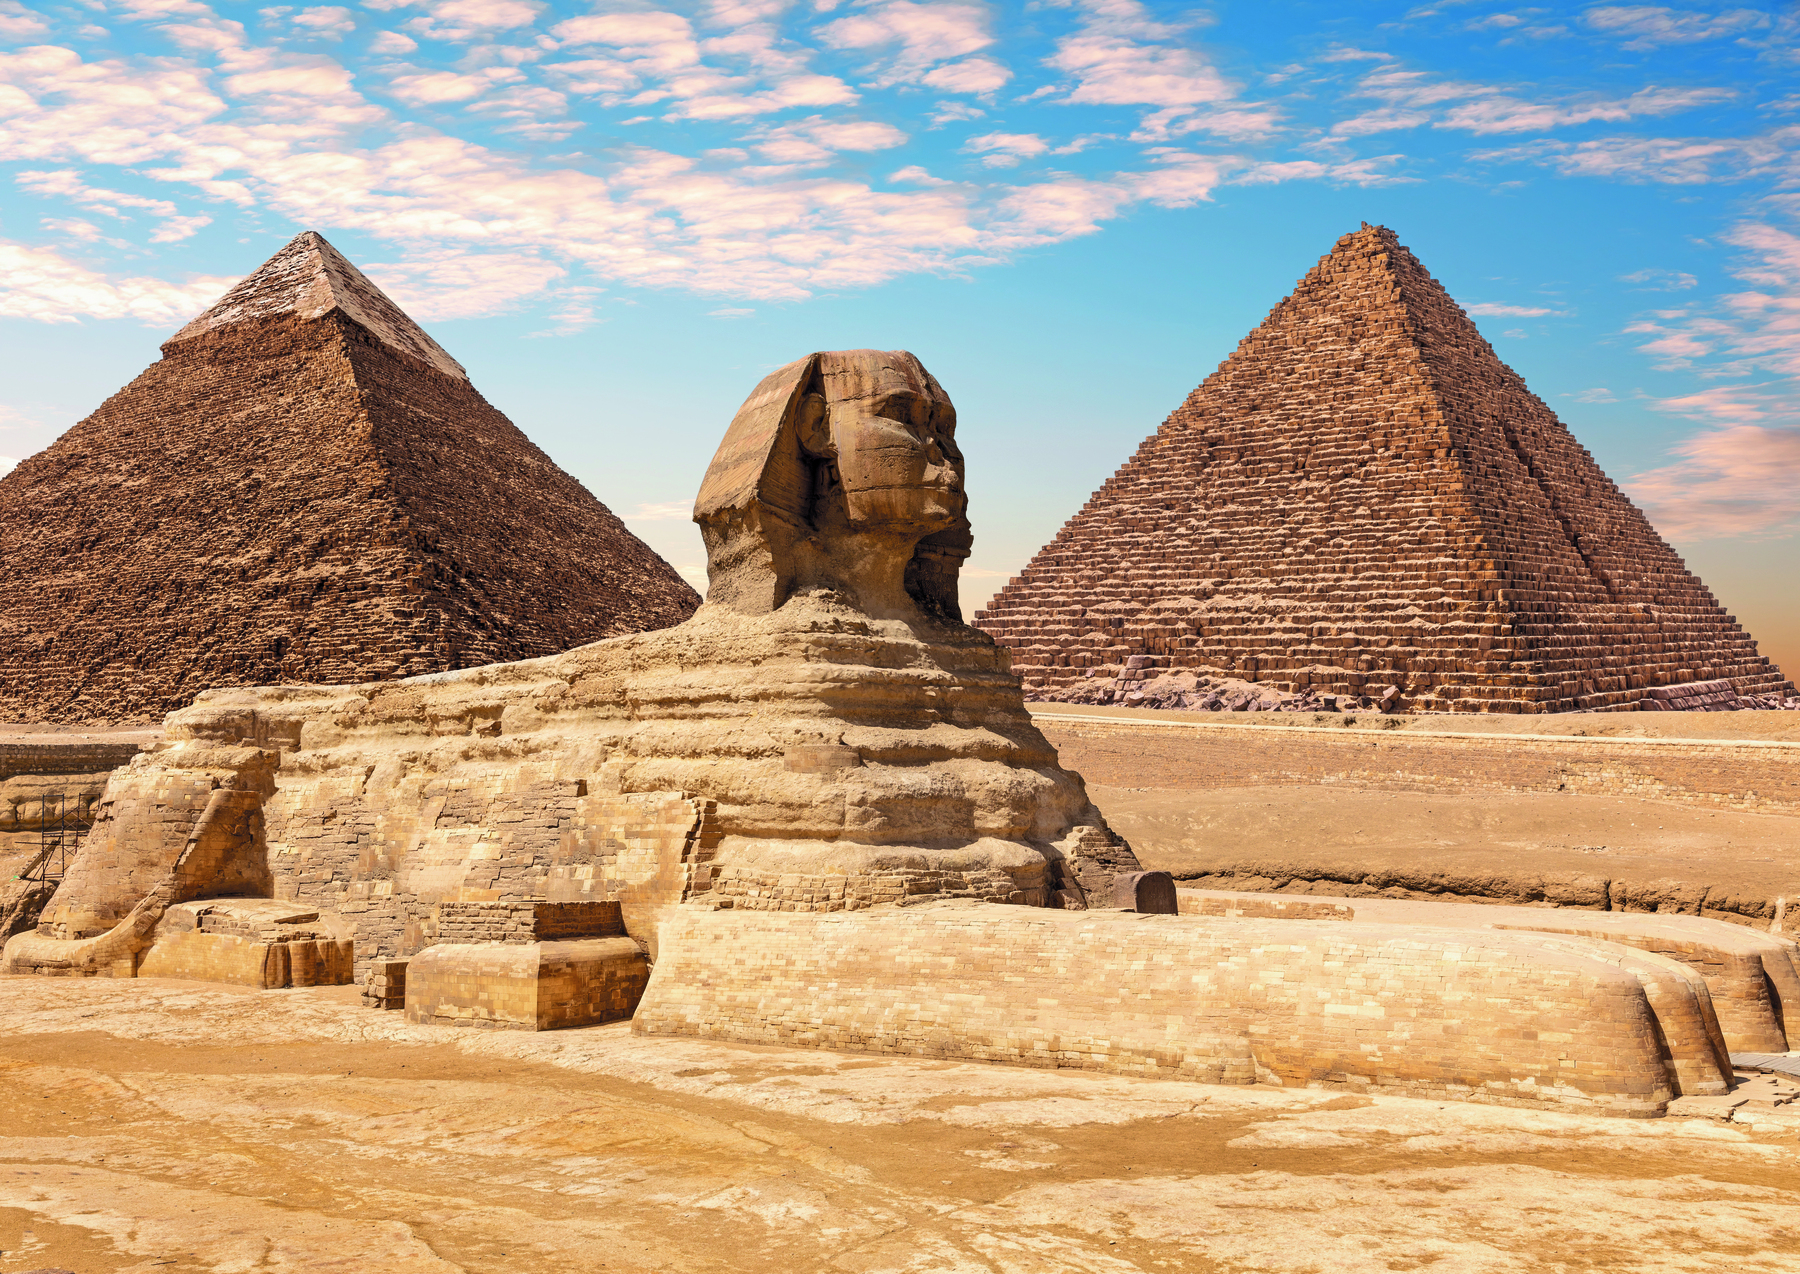 Fotografia. Vista de uma esfinge com rosto humano e corpo de animal, com as quatro patas sobre o solo. Ao fundo, duas pirâmides.